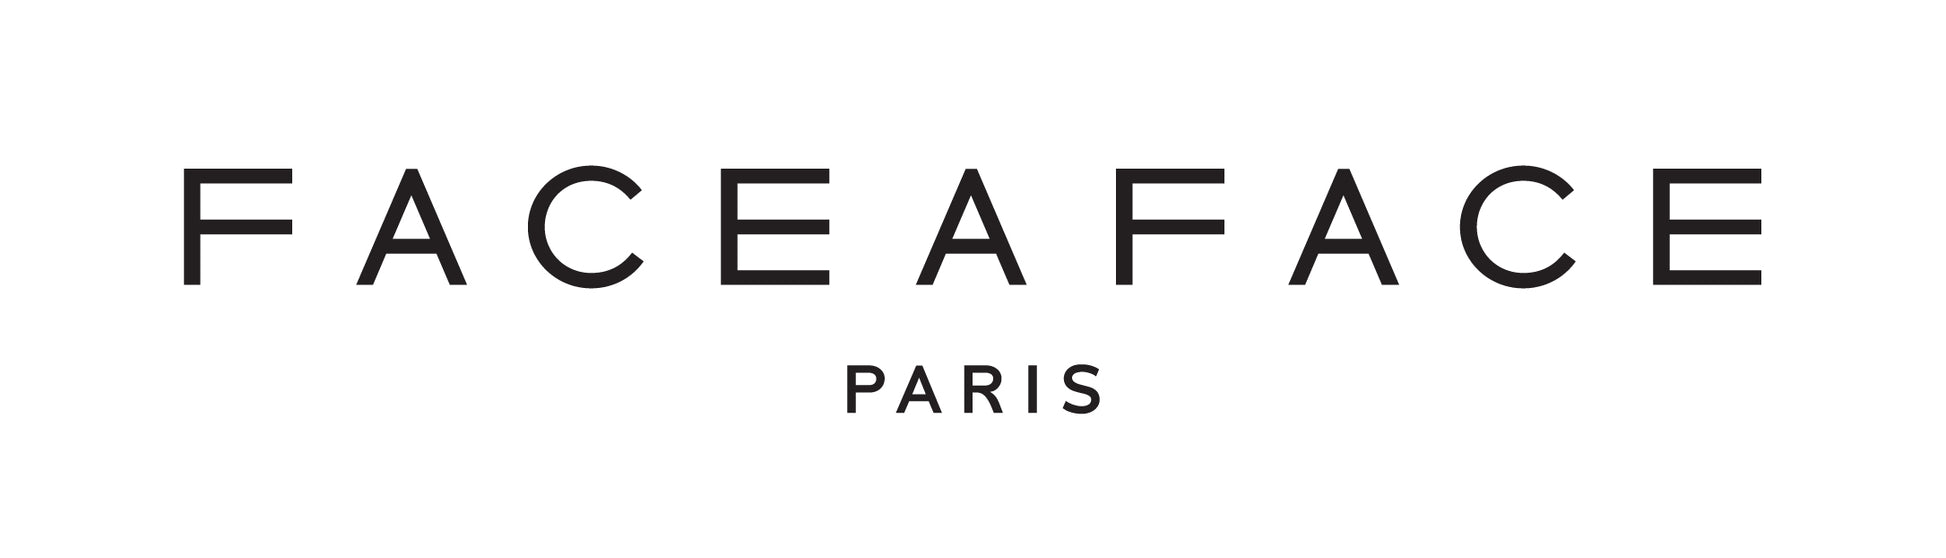 Face A Face Paris Logo